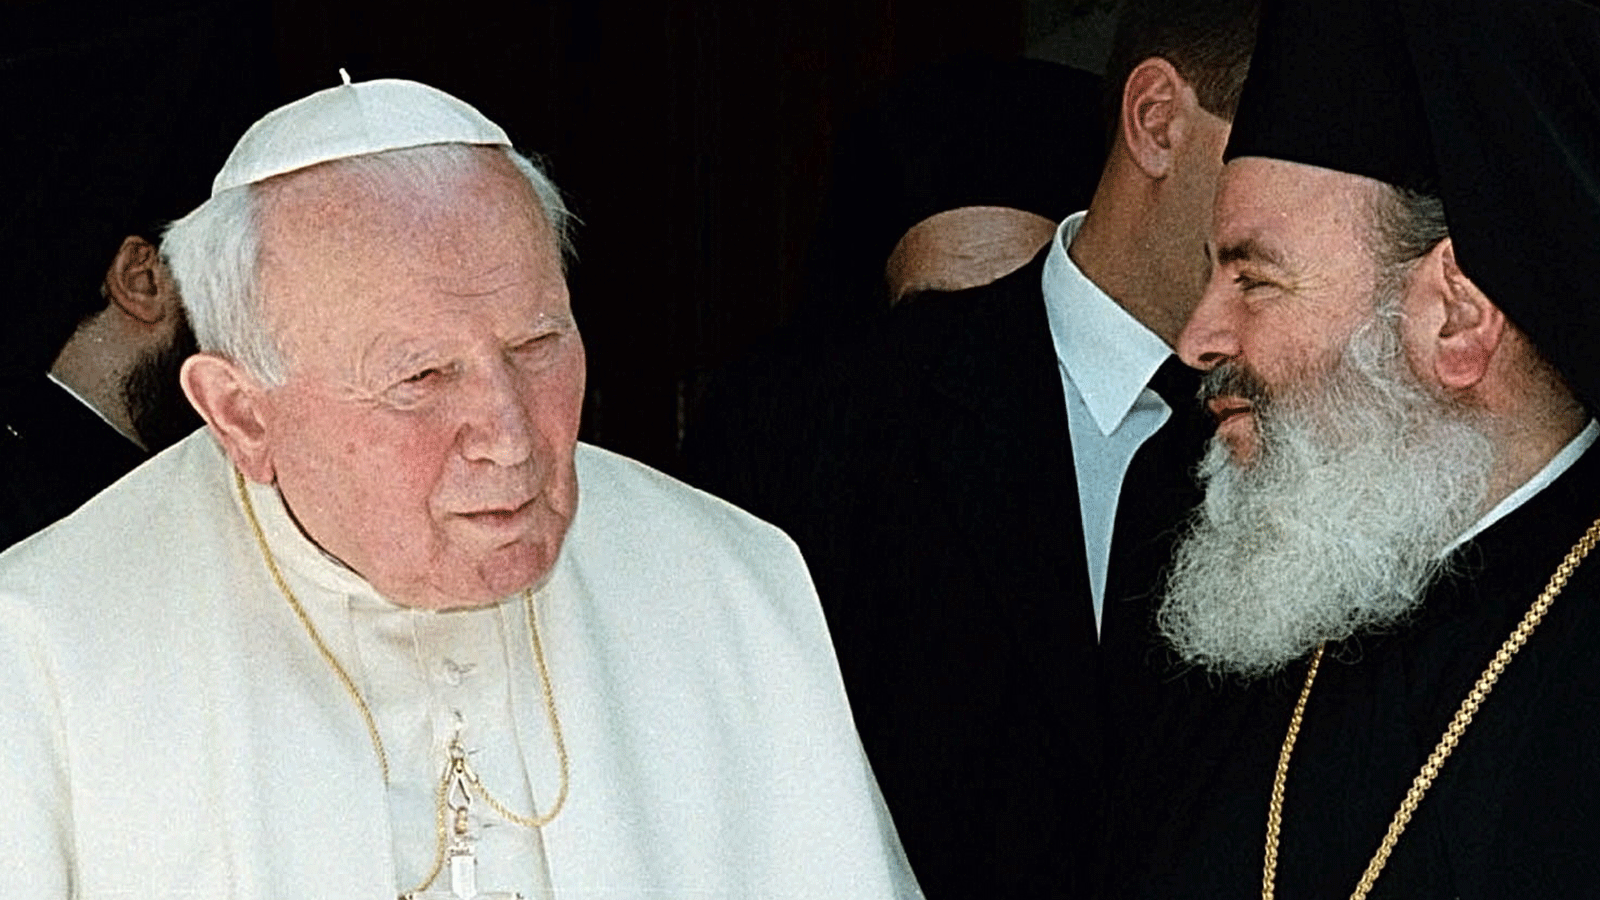 البابا يوحنا بولس الثاني يتحدث مع رئيس أساقفة أثينا وكل اليونان، كريستودولوس (على اليمين) خلال اجتماعهما في أثينا. 4 أيار/مايو 2001